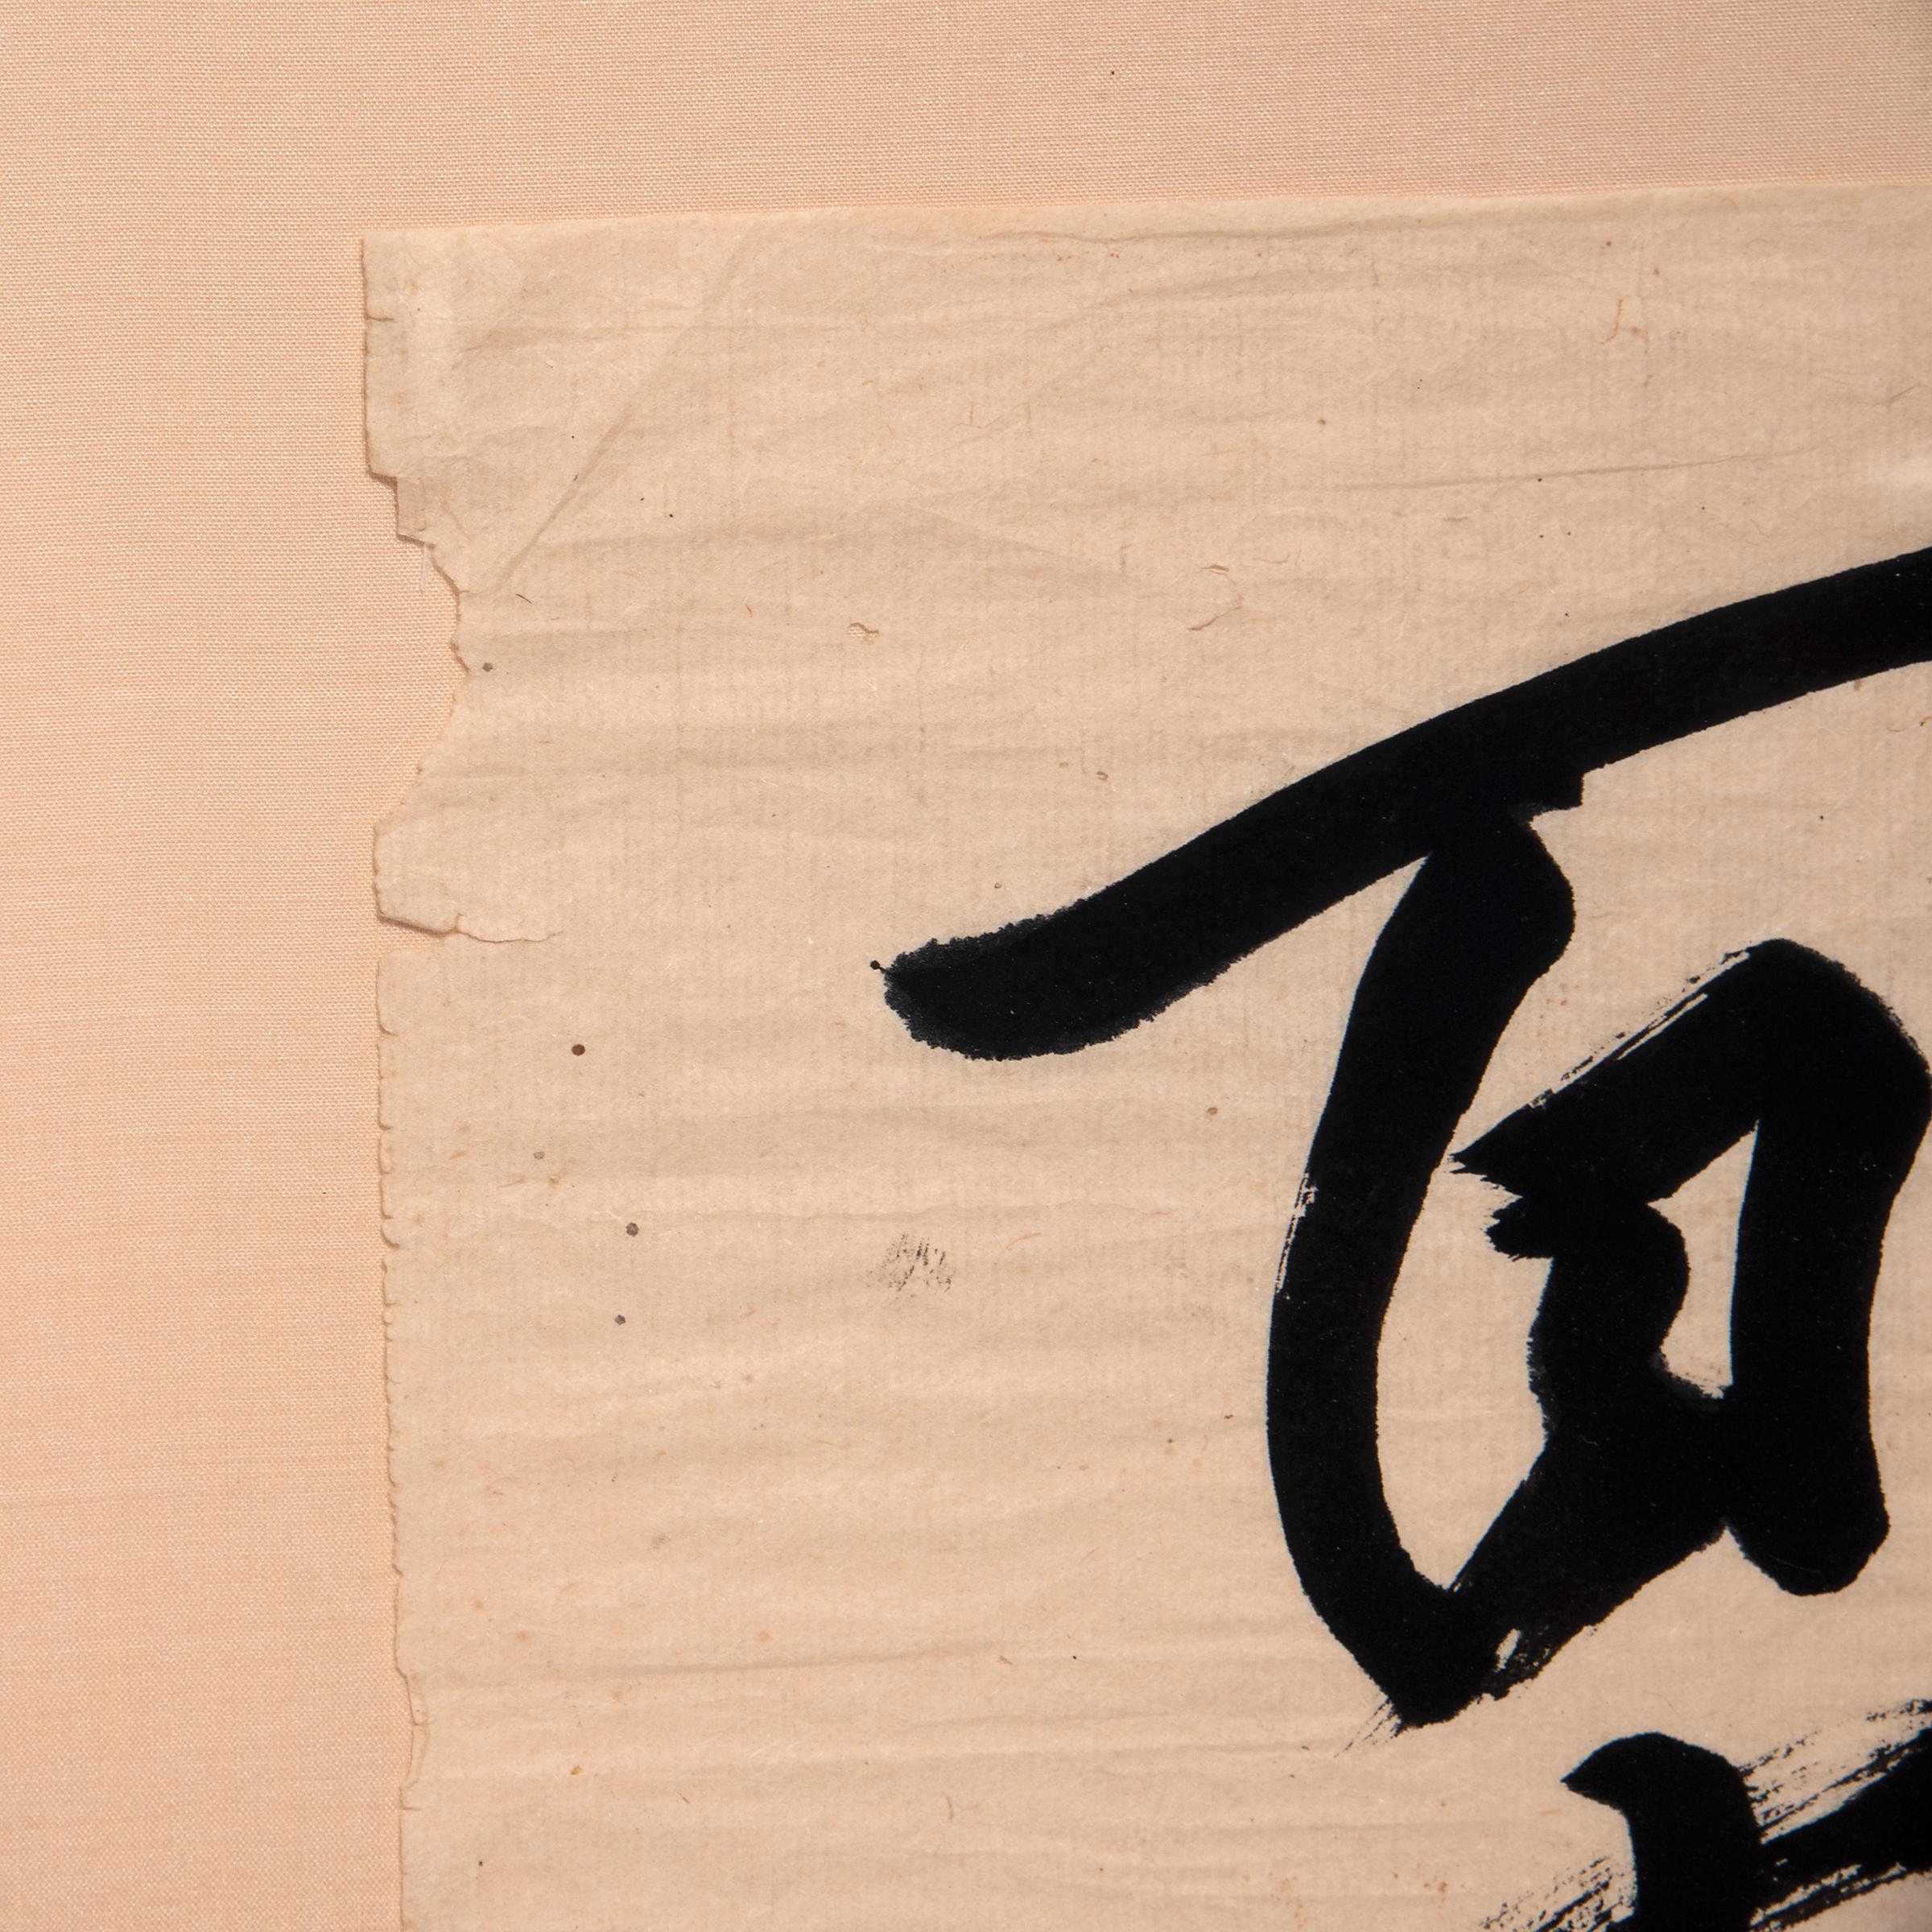 Diese Papierrolle aus dem frühen 20. Jahrhundert ist mit einer malerischen Kalligrafie auf einem Seidenbrokatgrund versehen. Die Schriftrolle drückt Begriffe wie Ausdauer und moralische Stärke aus und könnte zu Ehren eines Freundes oder einer